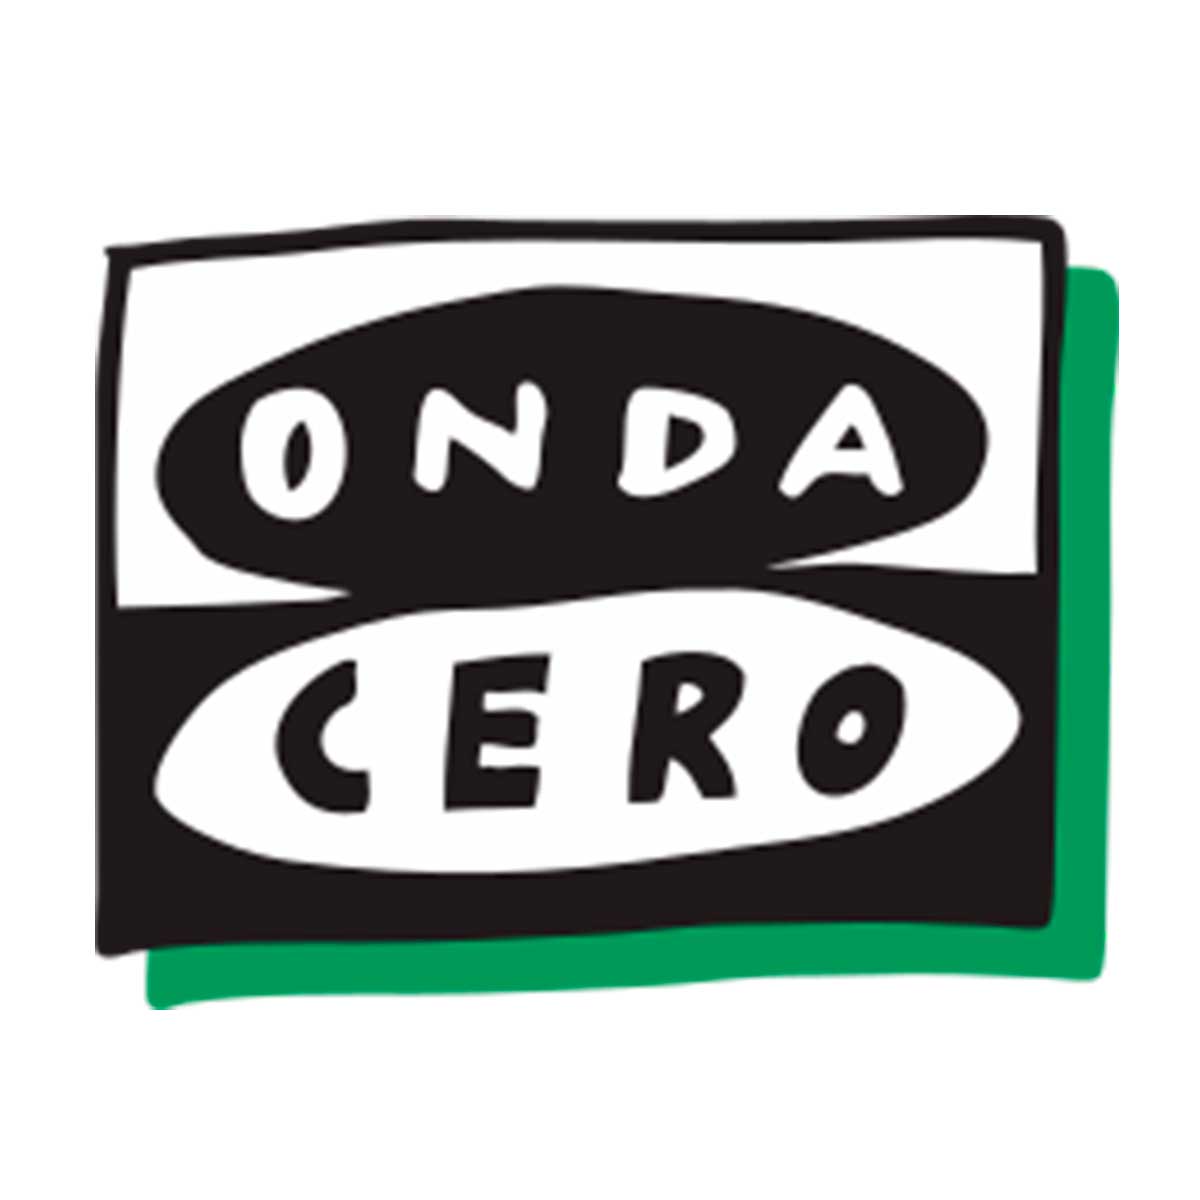 Logo Onda Cero